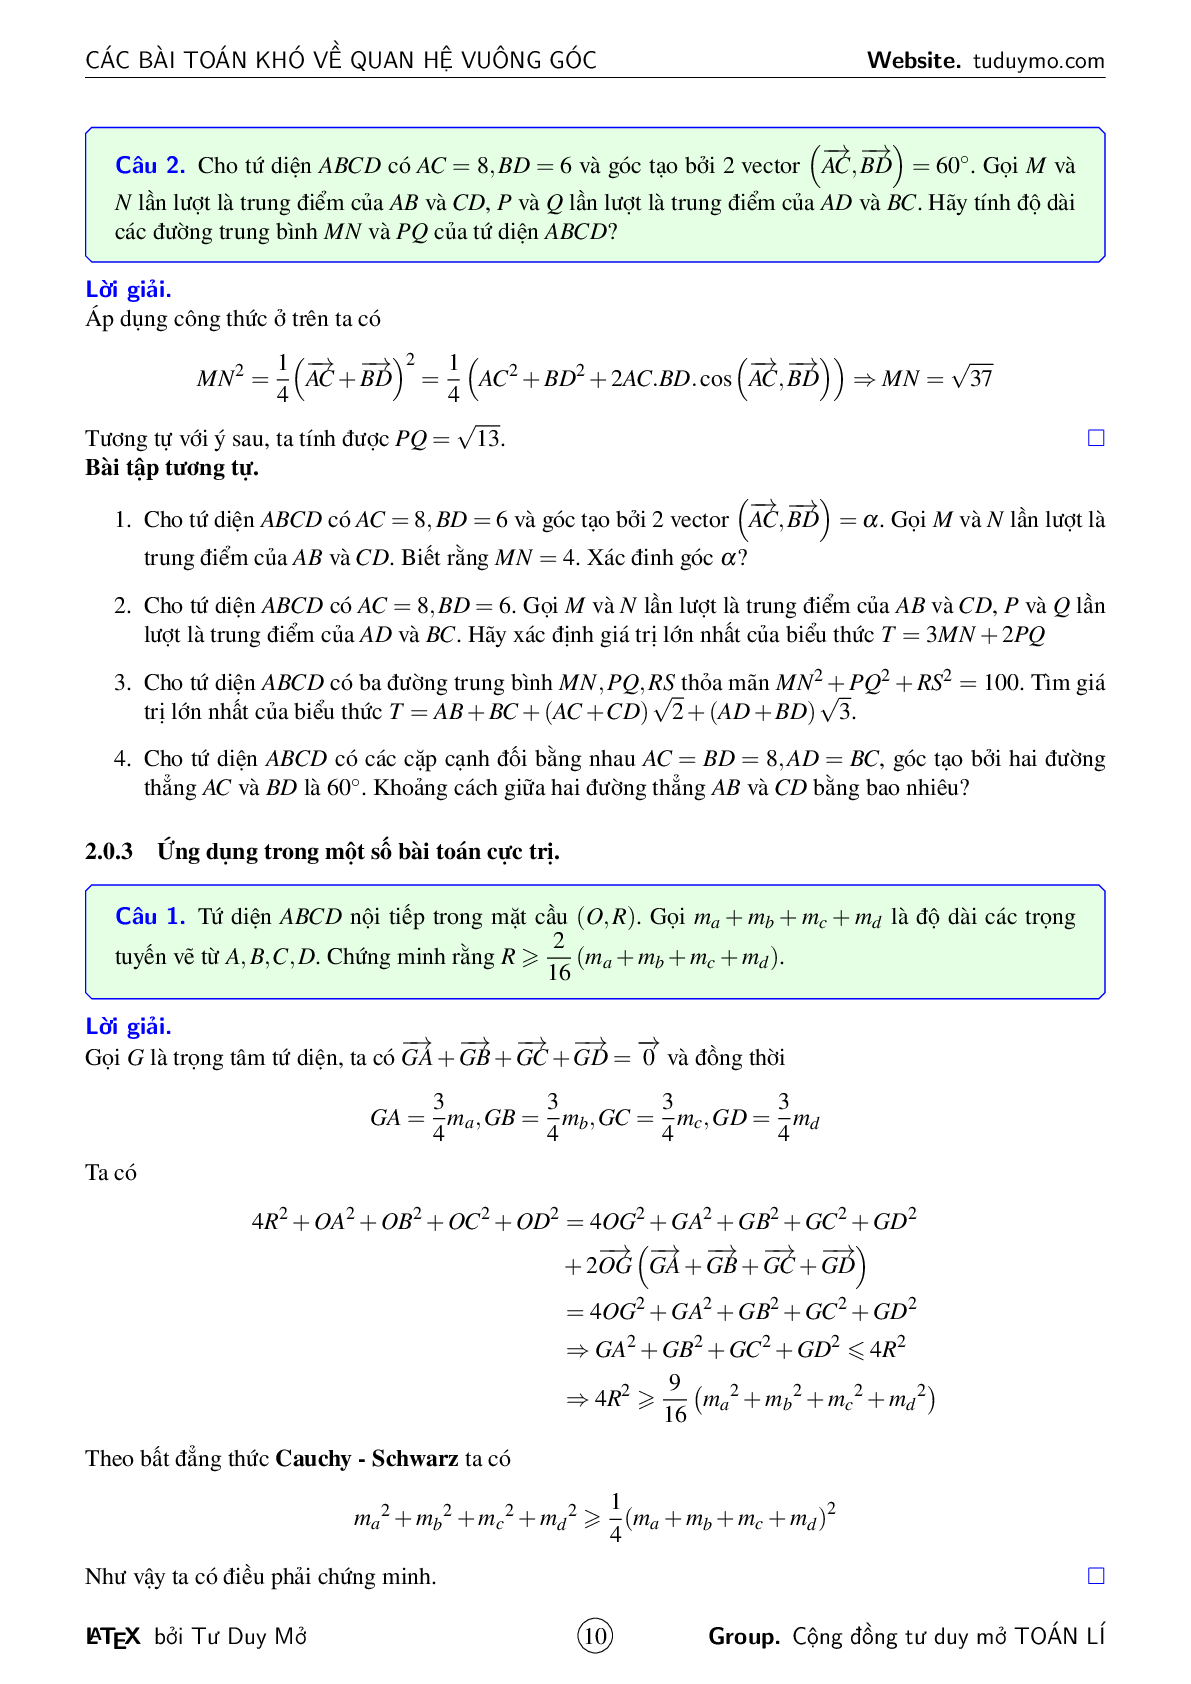 Các bài toán khó về quan hệ vuông góc (trang 10)